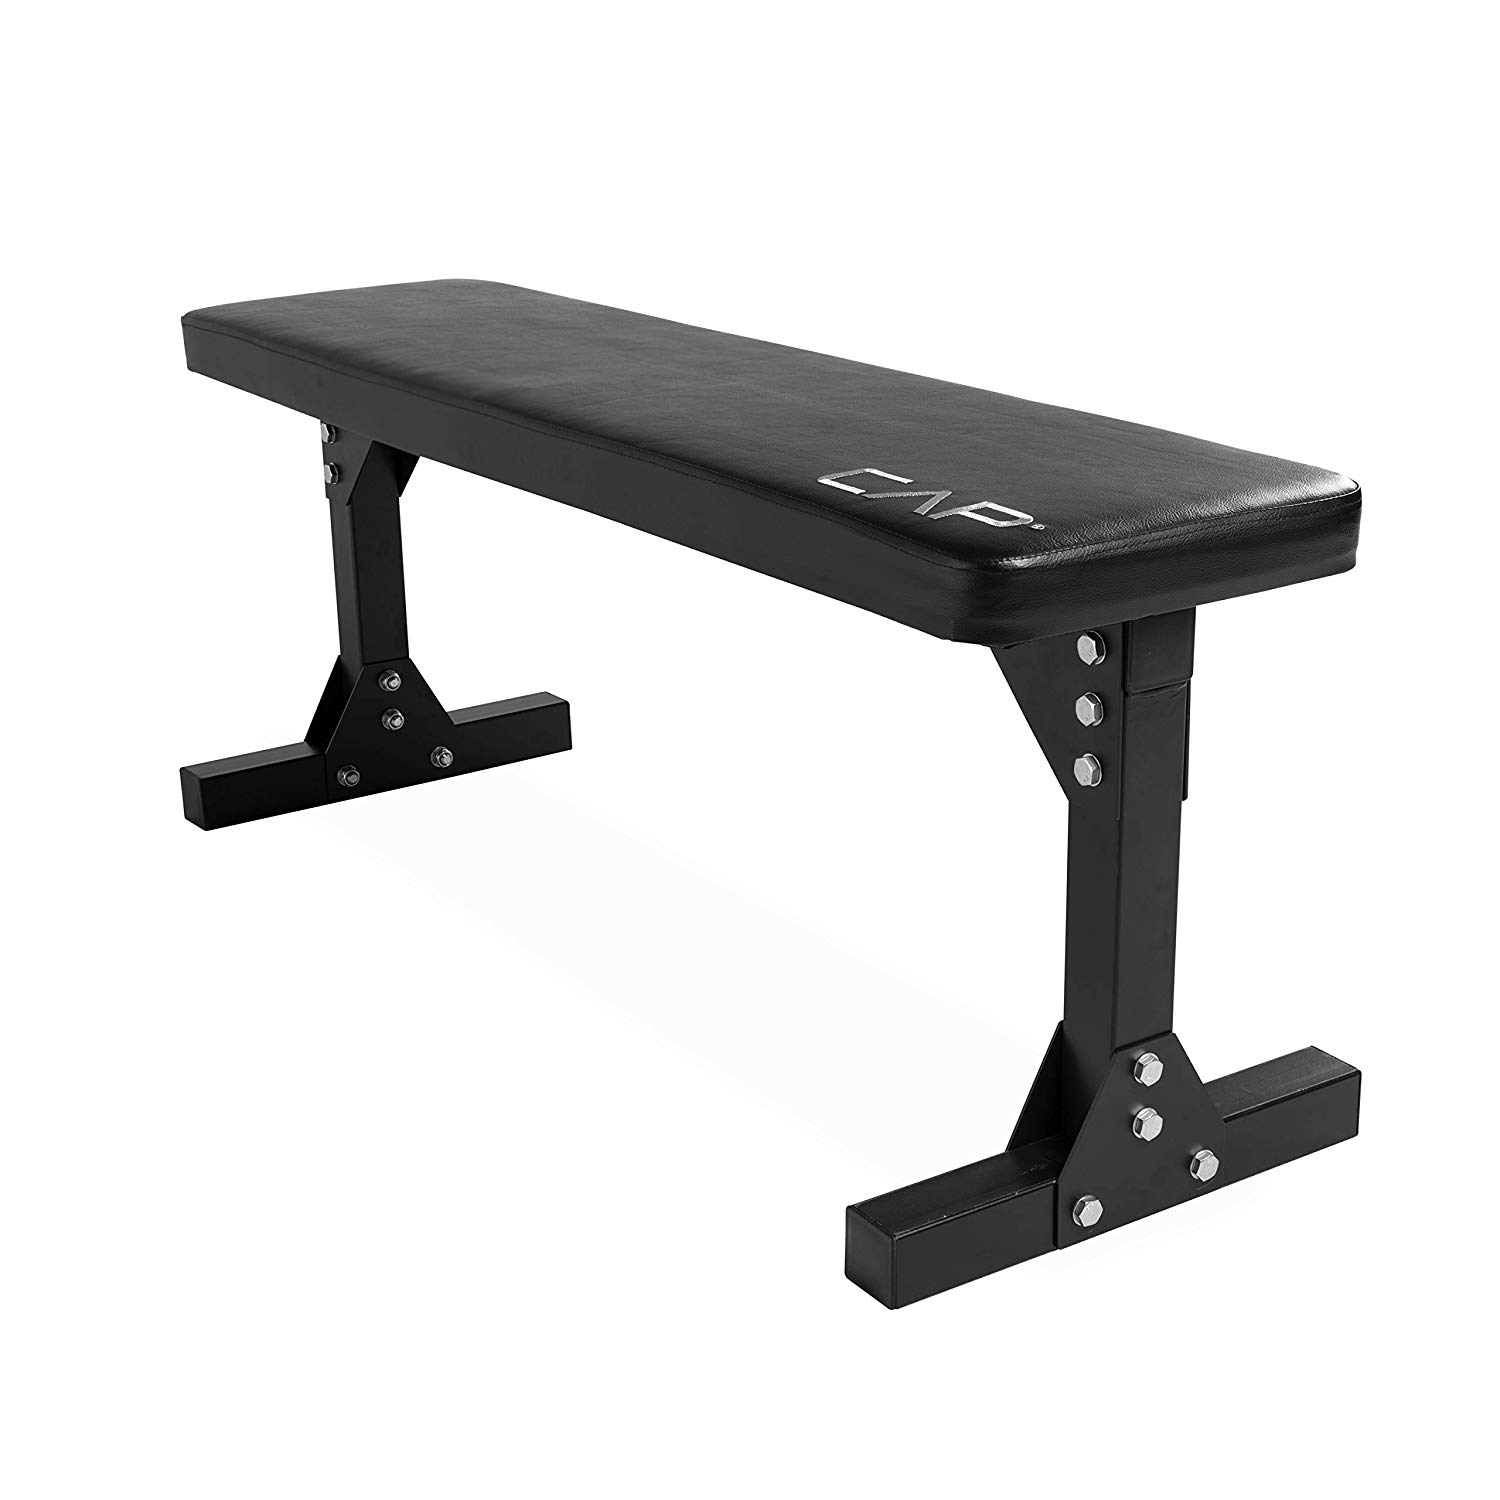 CAP Exercise weight flat bench 